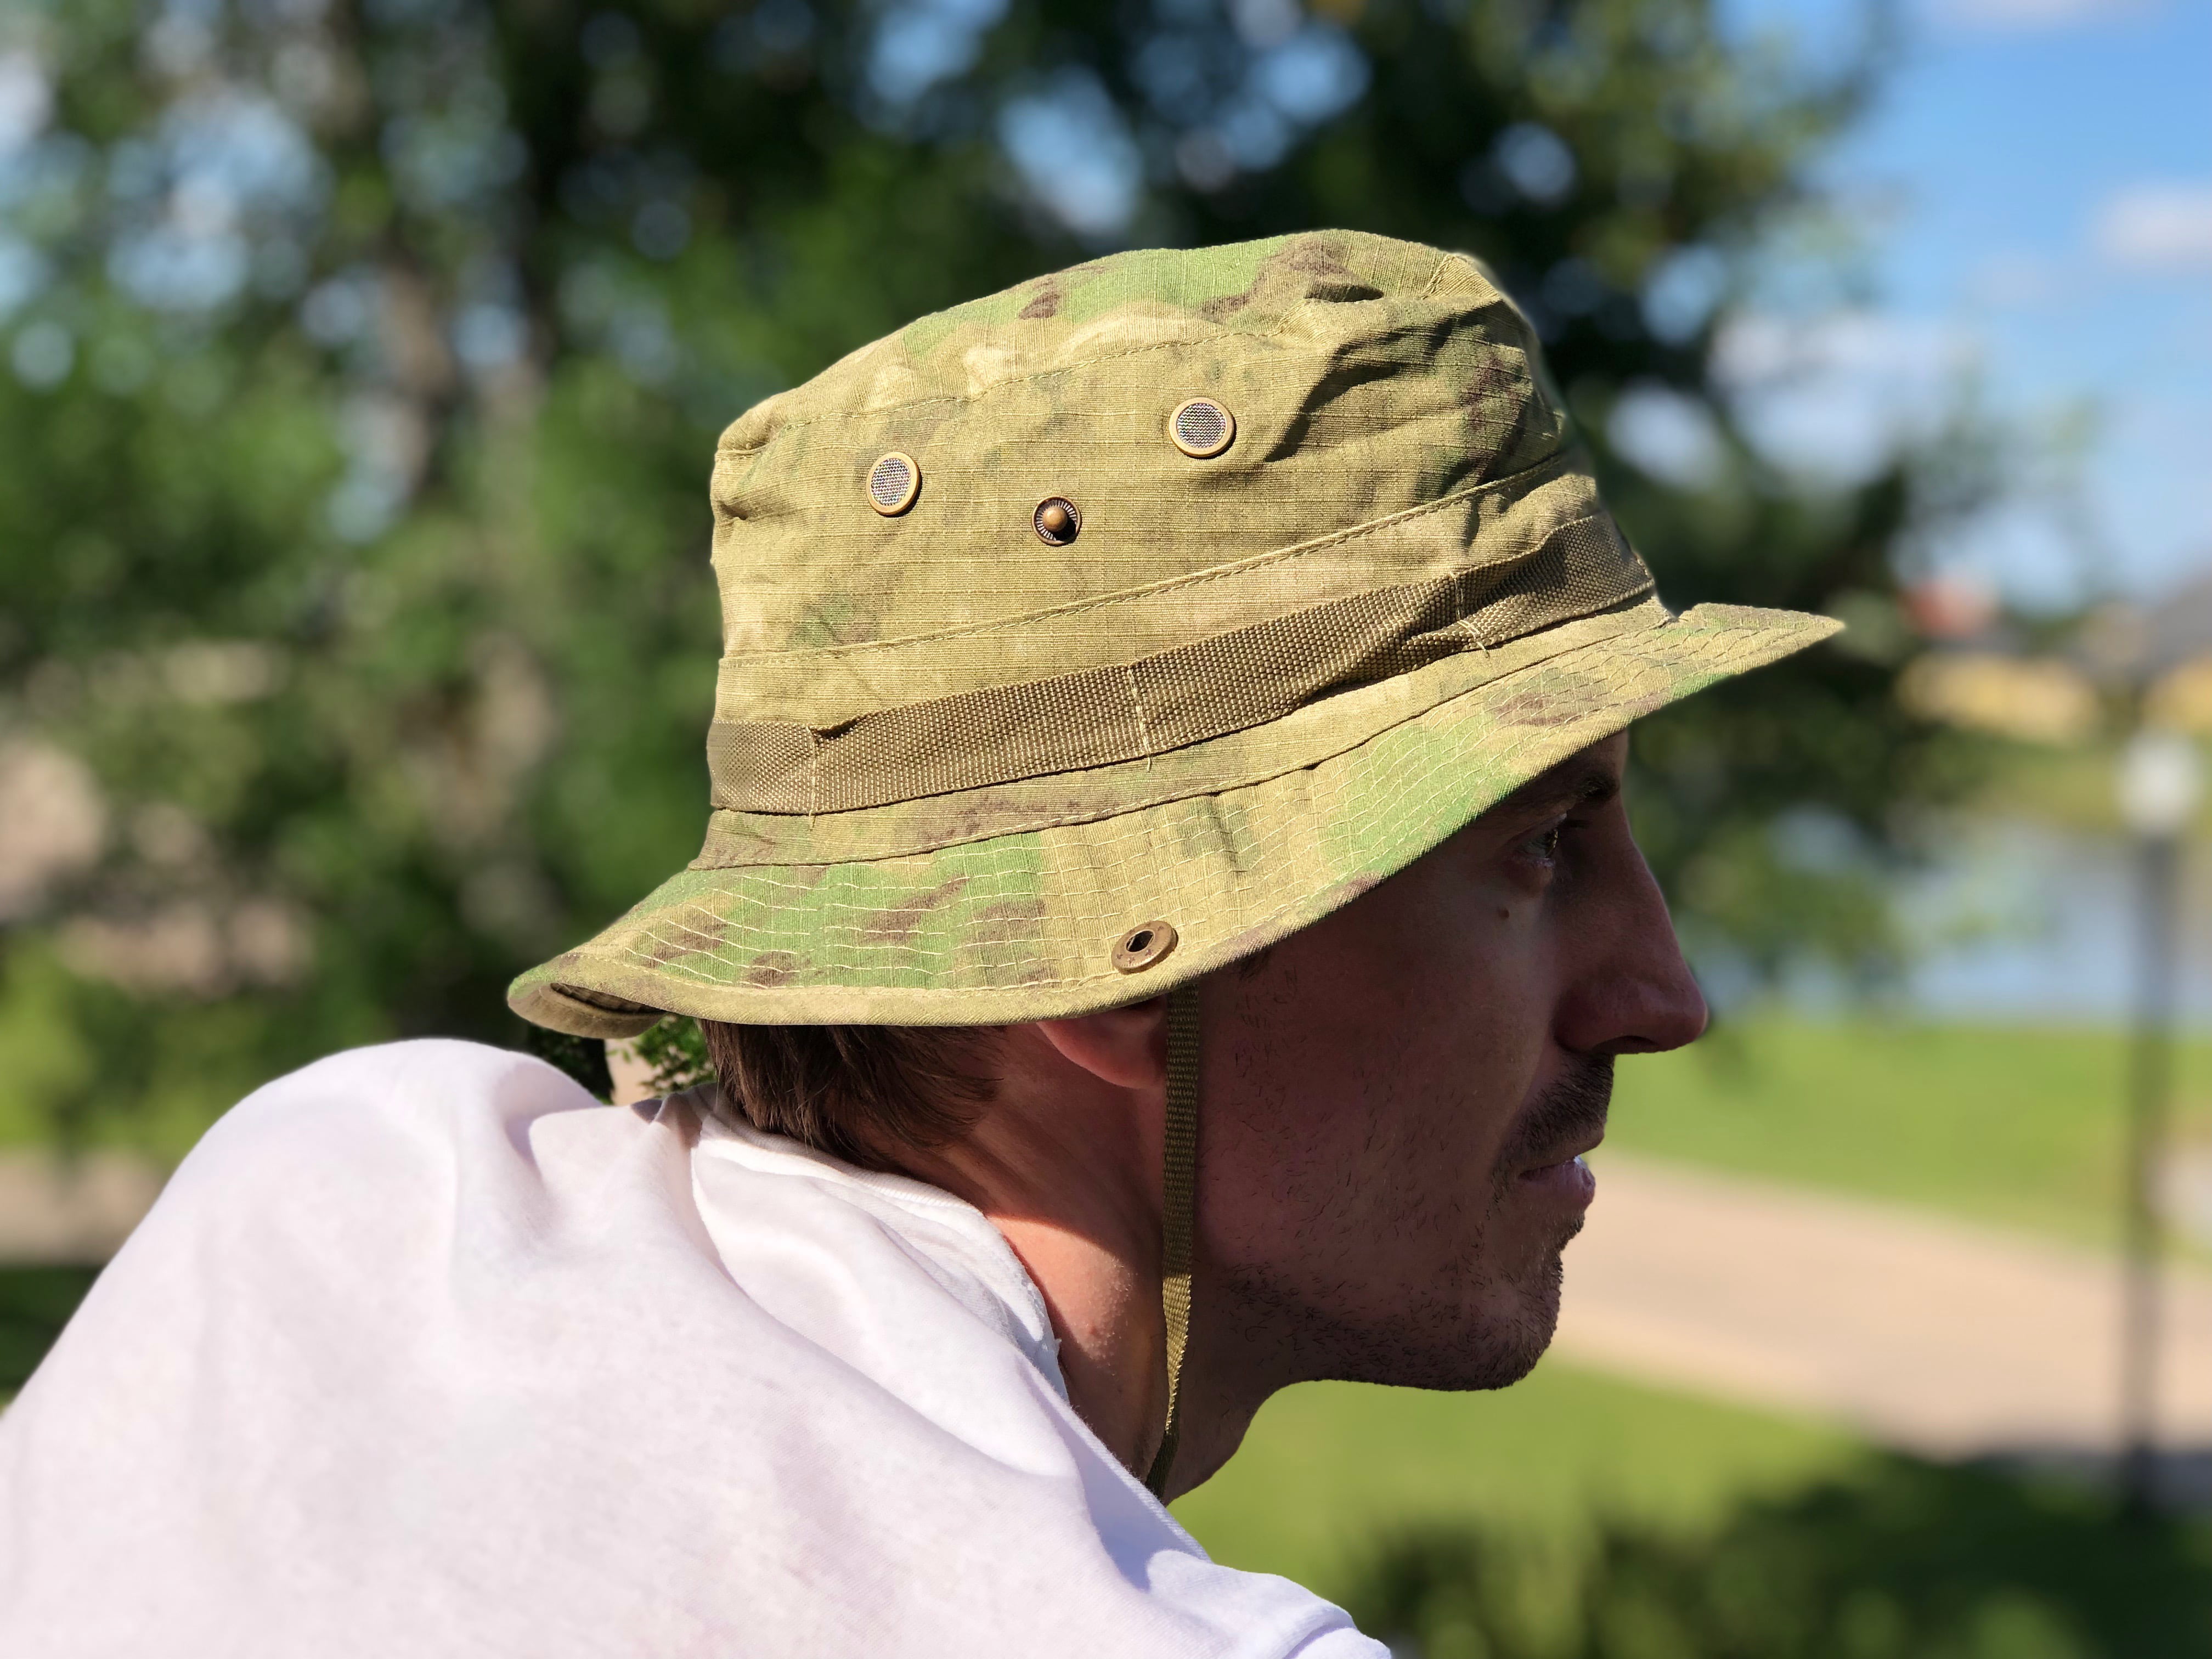 Tactical Boonie Bucket Hat (Green Camo) 